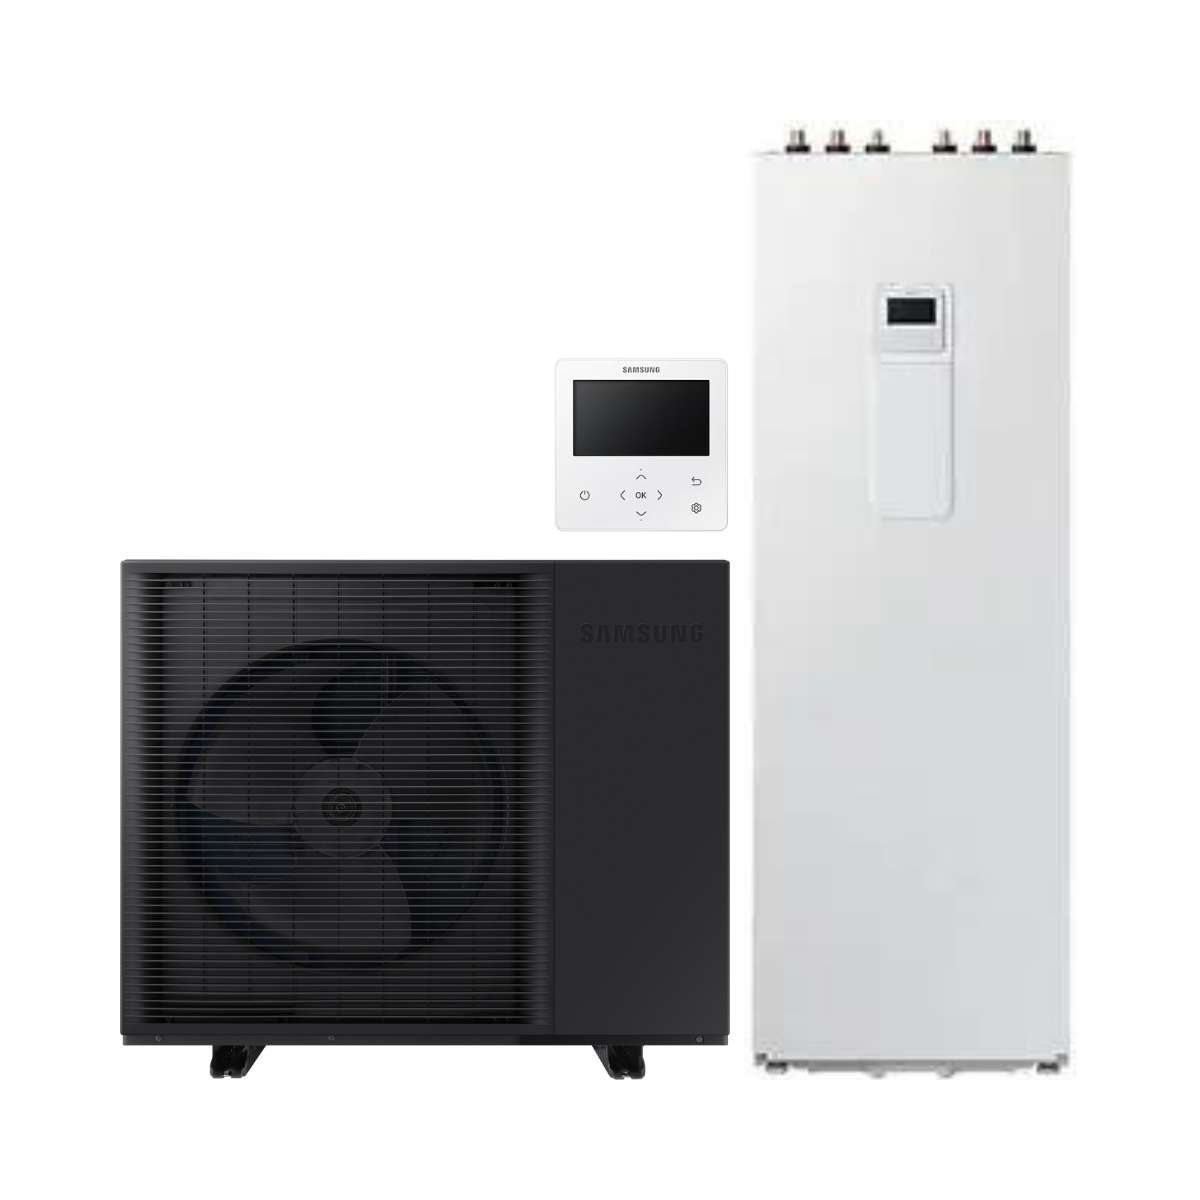 Set pompa di calore monoblocco Samsung EHS HT 8 kW + ClimateHub da 200 litri con riferimento KITSAMEHSHT8+200 del marchio SAMSUNG